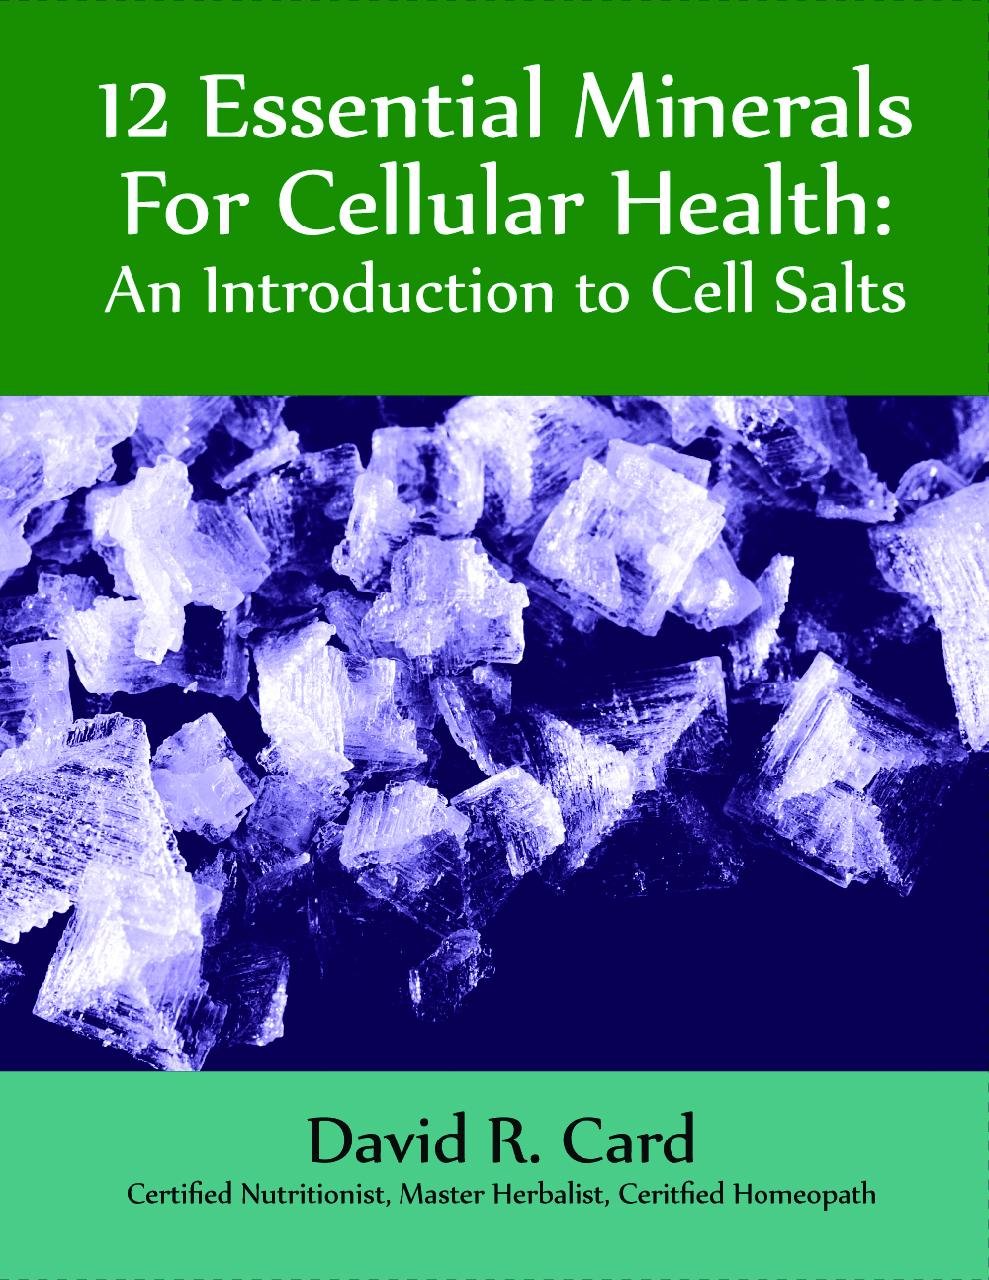 12 minéraux essentiels pour la santé cellulaire : une introduction aux sels cellulaires